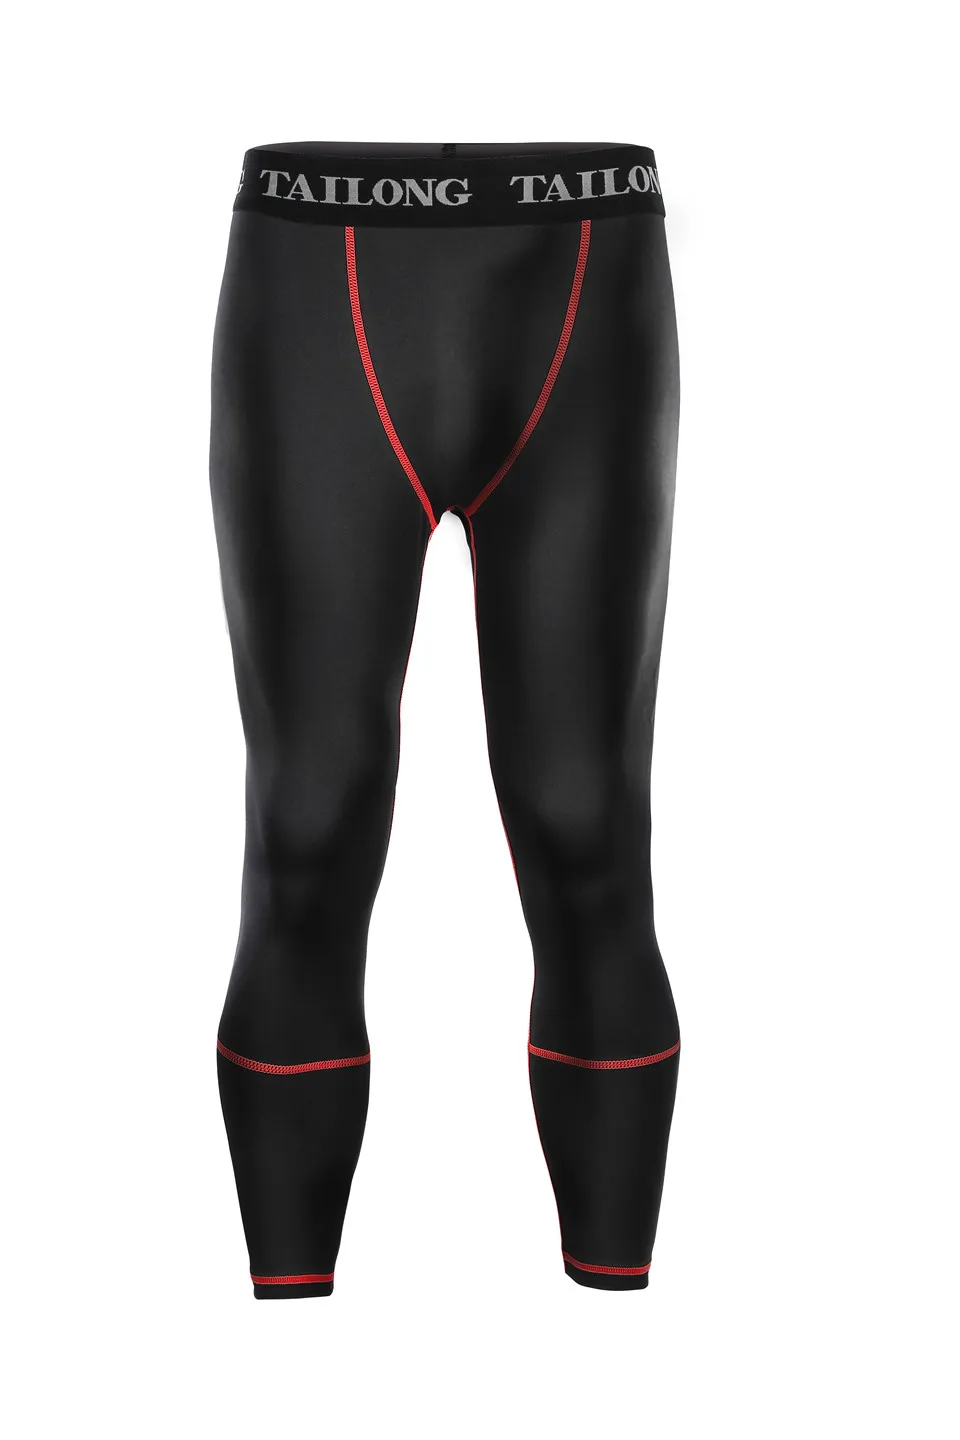 Junlan Мужские Брюки Компрессионные облегающие брюки для похудения брюки для тренировок Леггинсы эластичные шорты - Цвет: Red